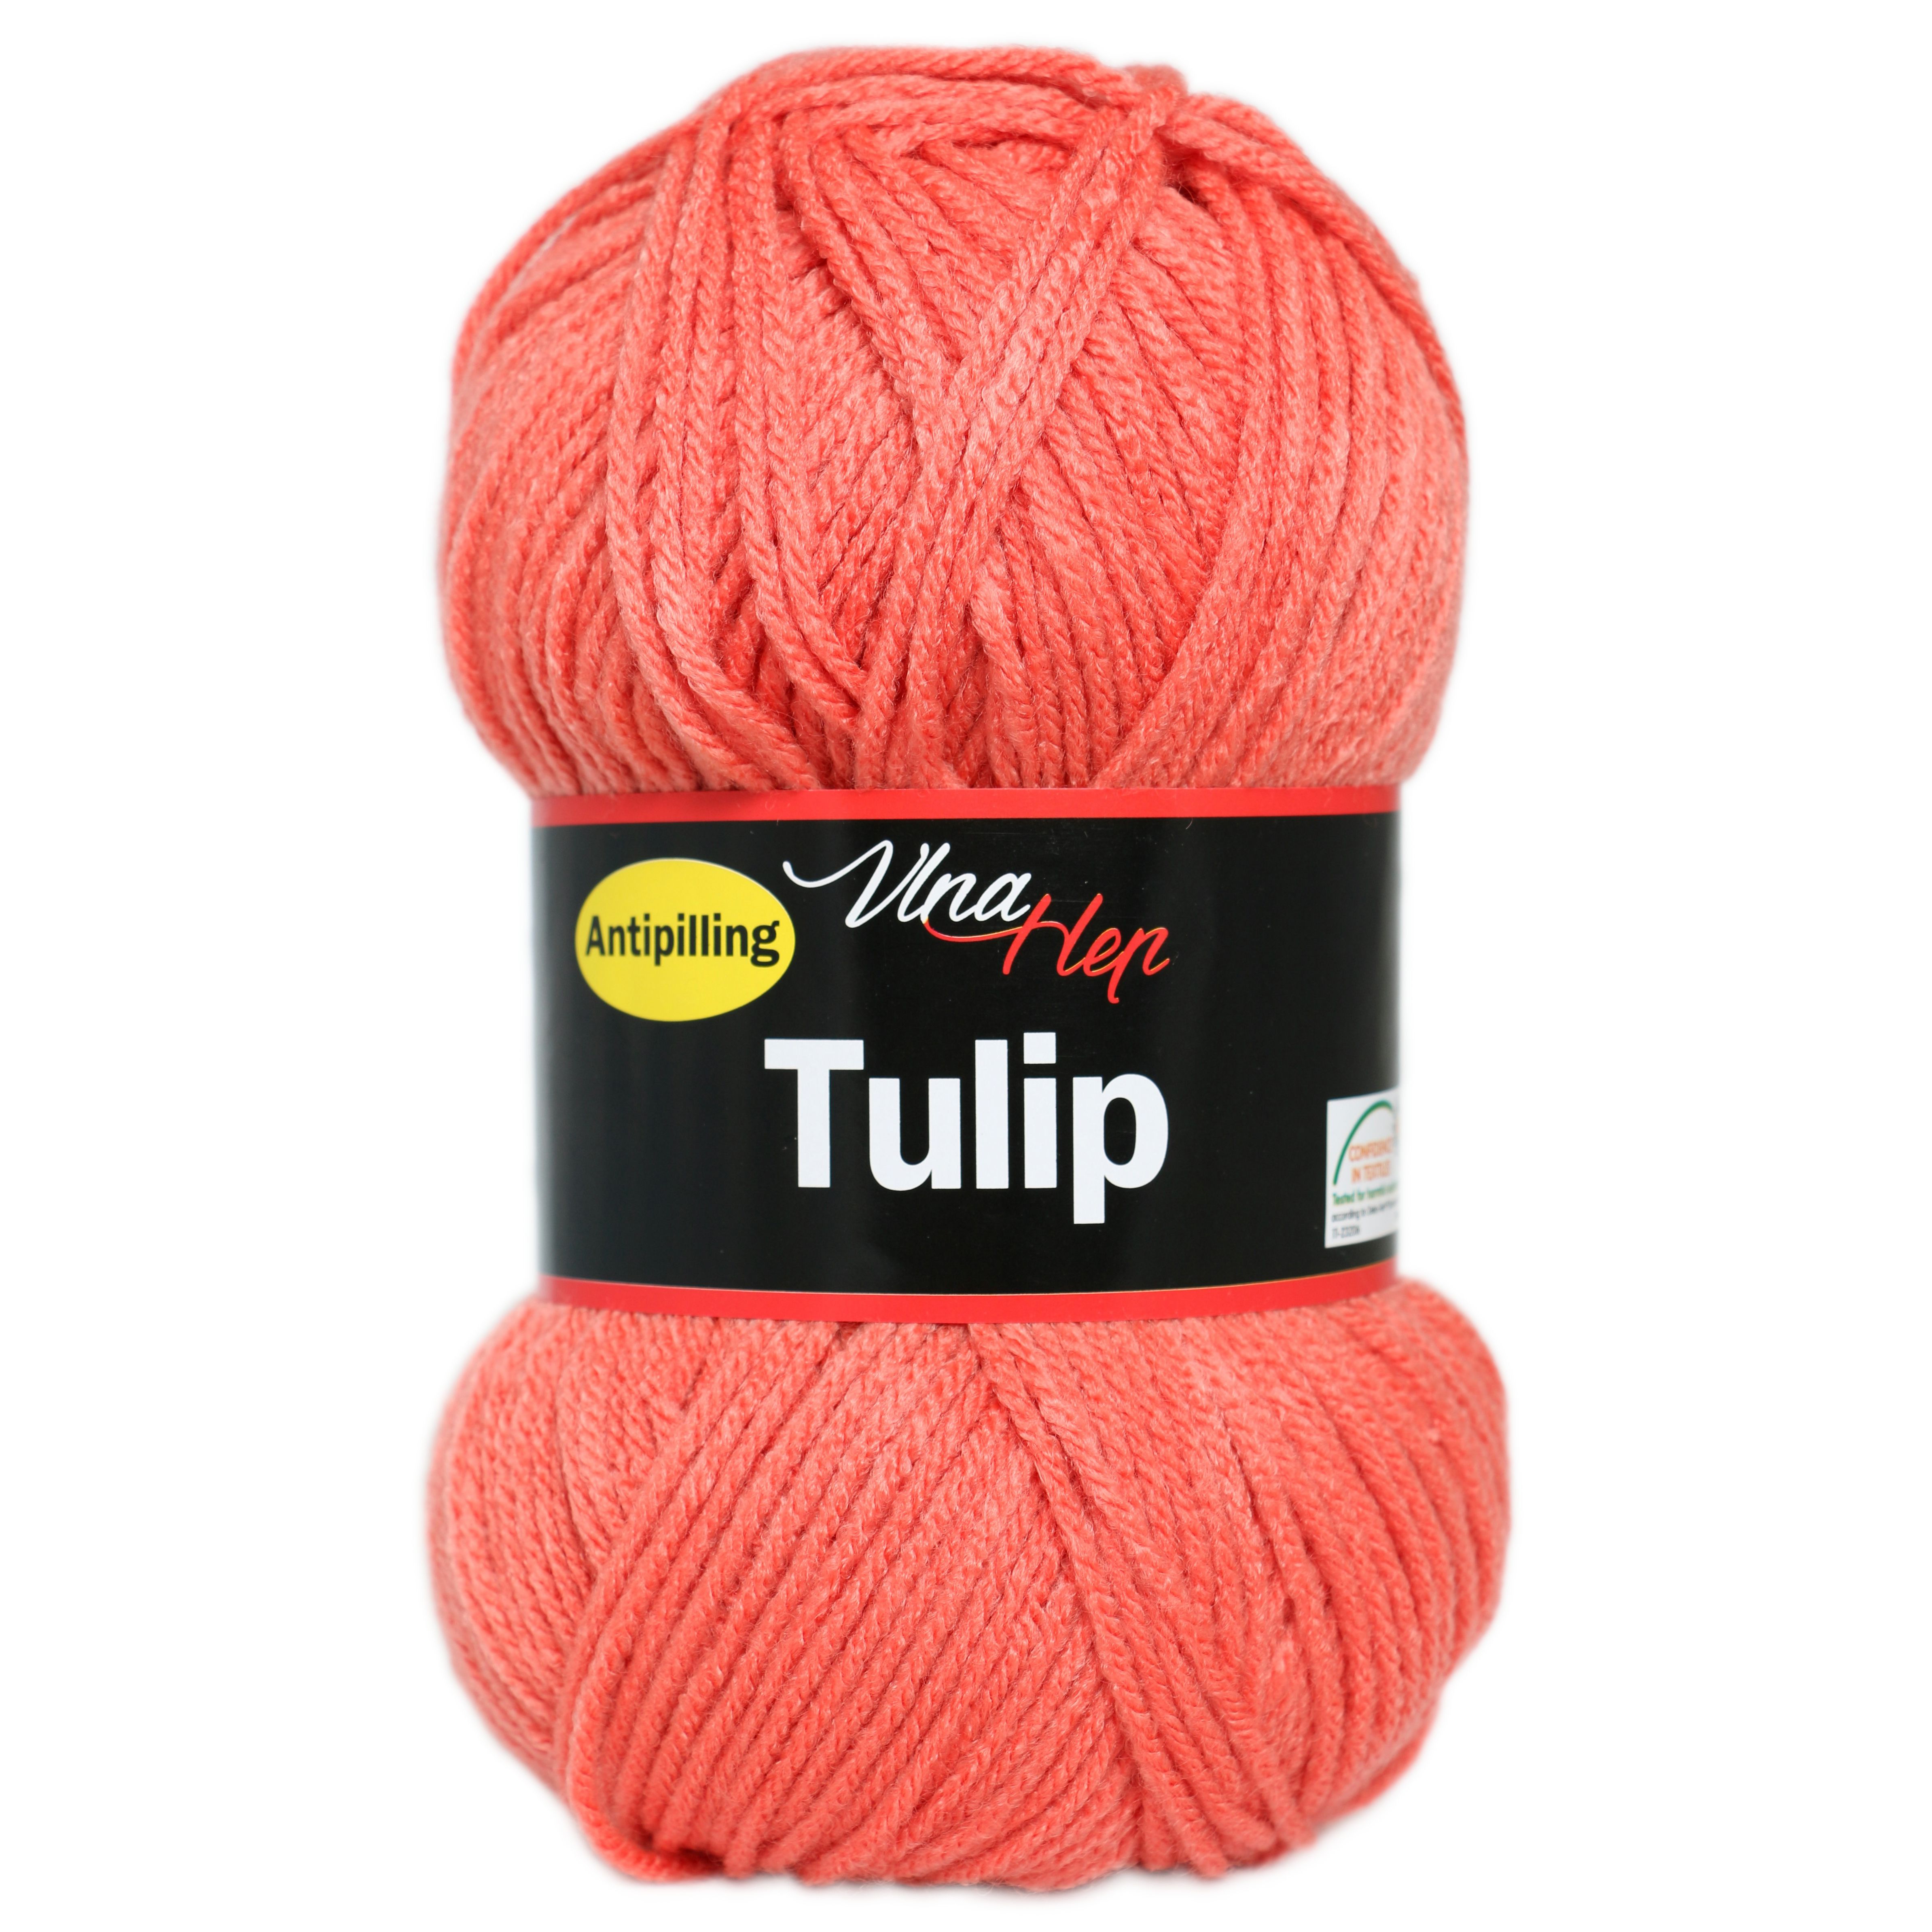 Příze Tulip (Vlna Hep)  4405 - korálová